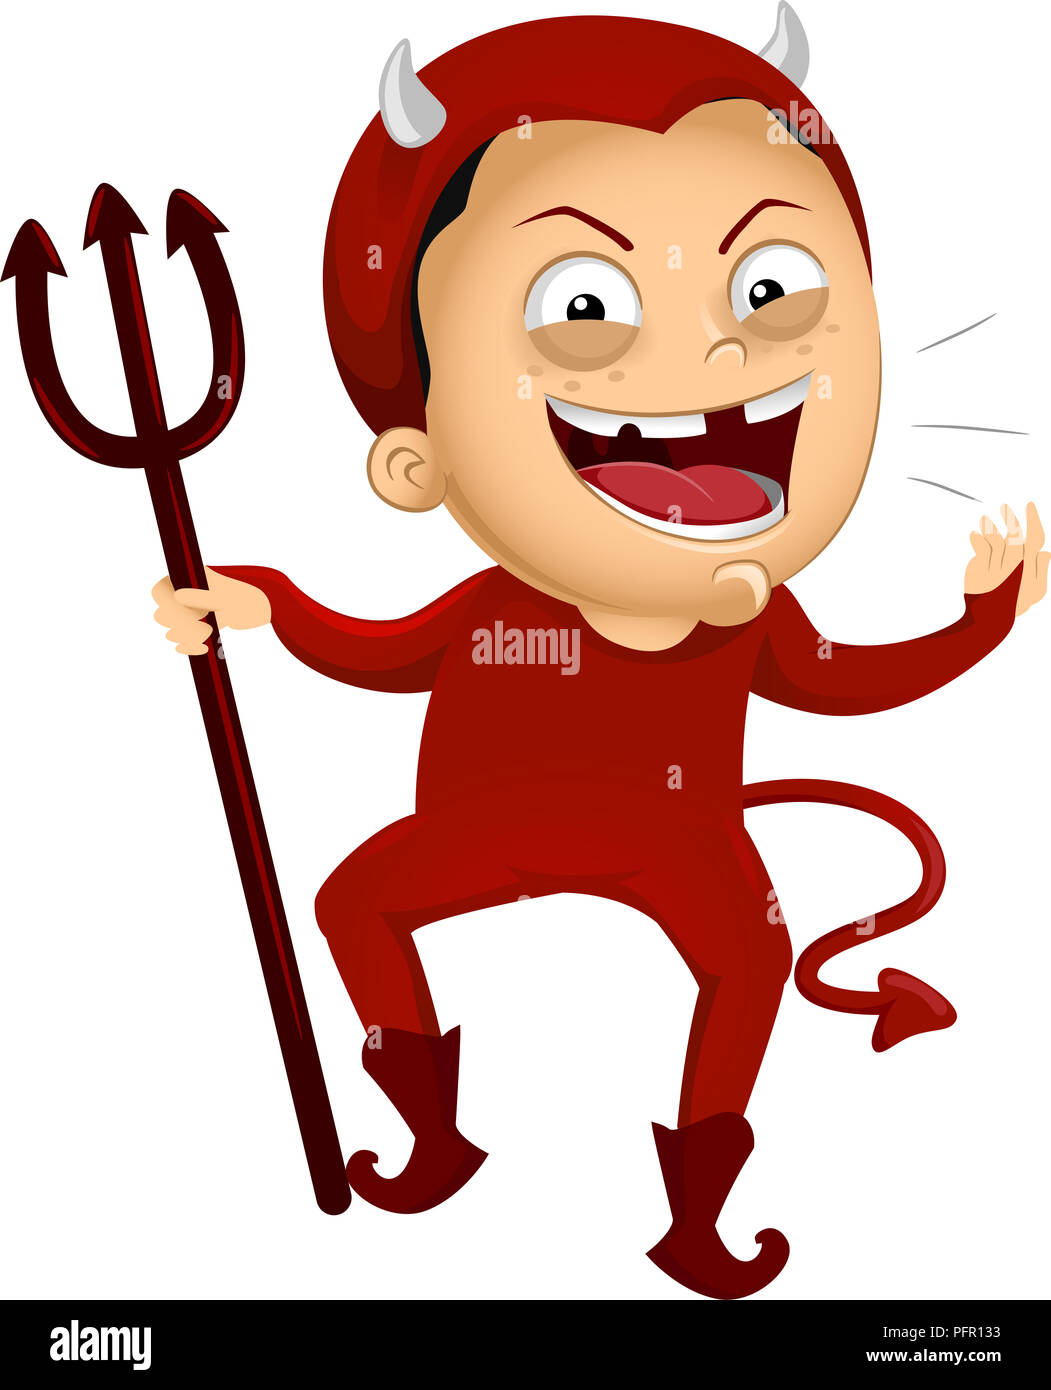 Illustrazione di un bambino ragazzo che indossa un diavolo rosso